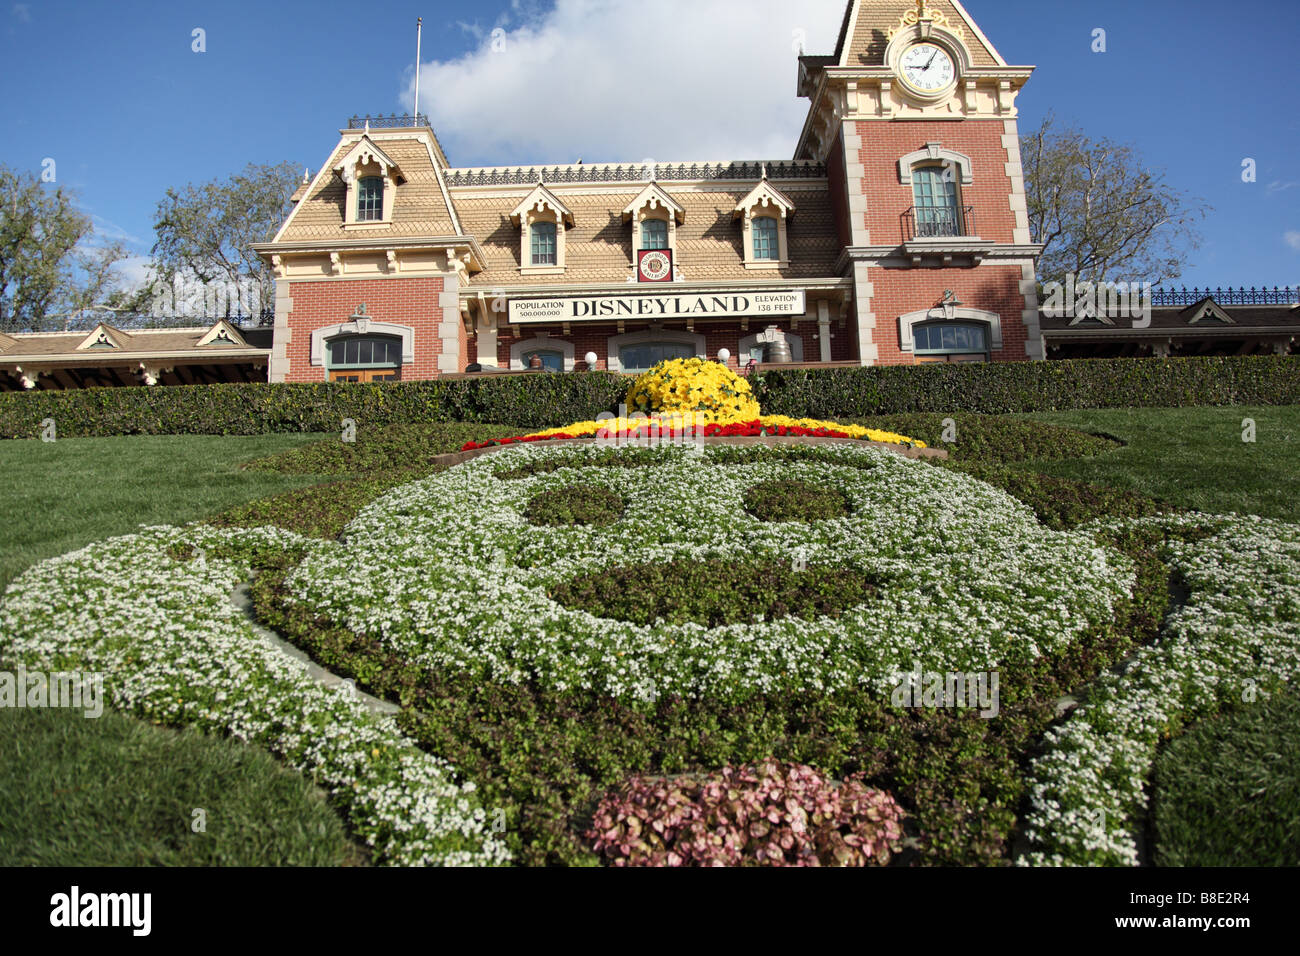 Stazione ferroviaria all'entrata del parco a tema Disneyland Foto Stock